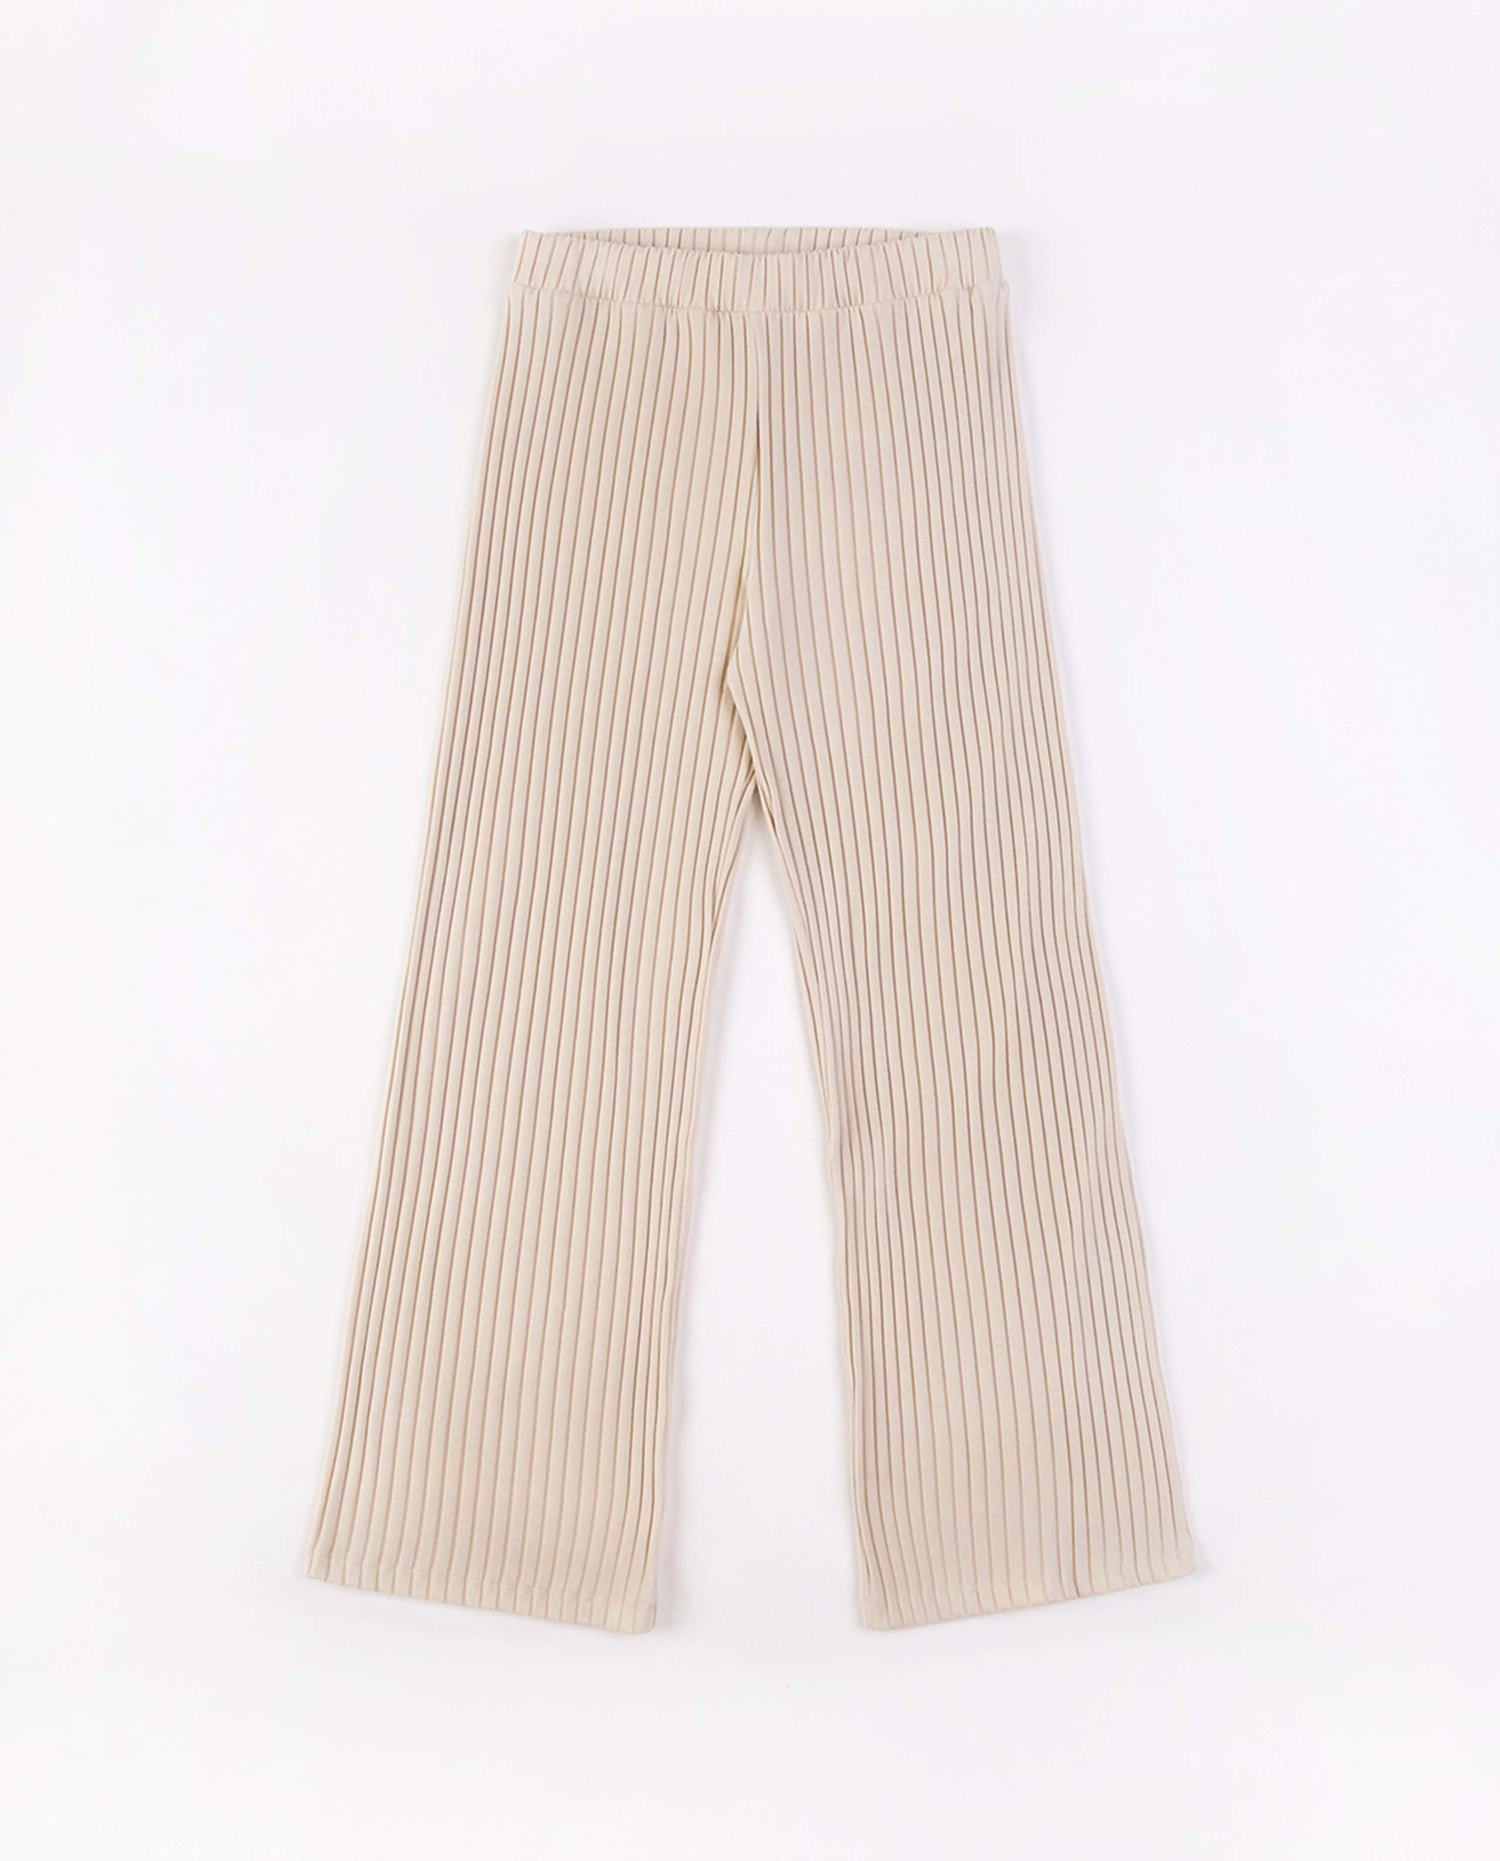 marché commun rotholz pantalon femme loungewear coton biologique côtelé crème